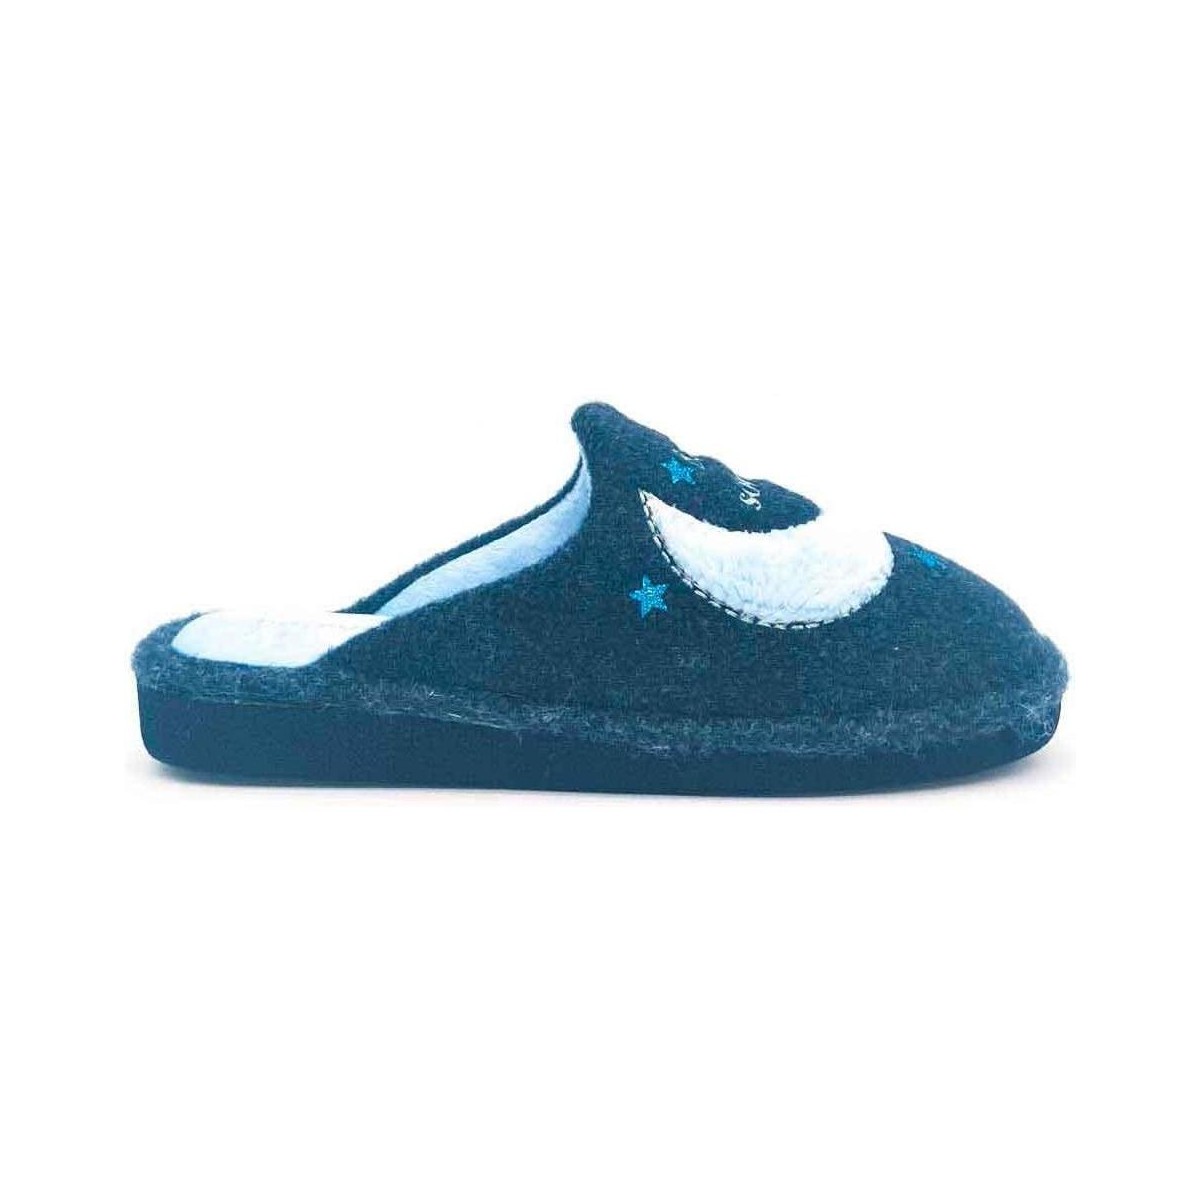 Zapatos Mujer Zapatillas bajas Berevere IN1510 Azul